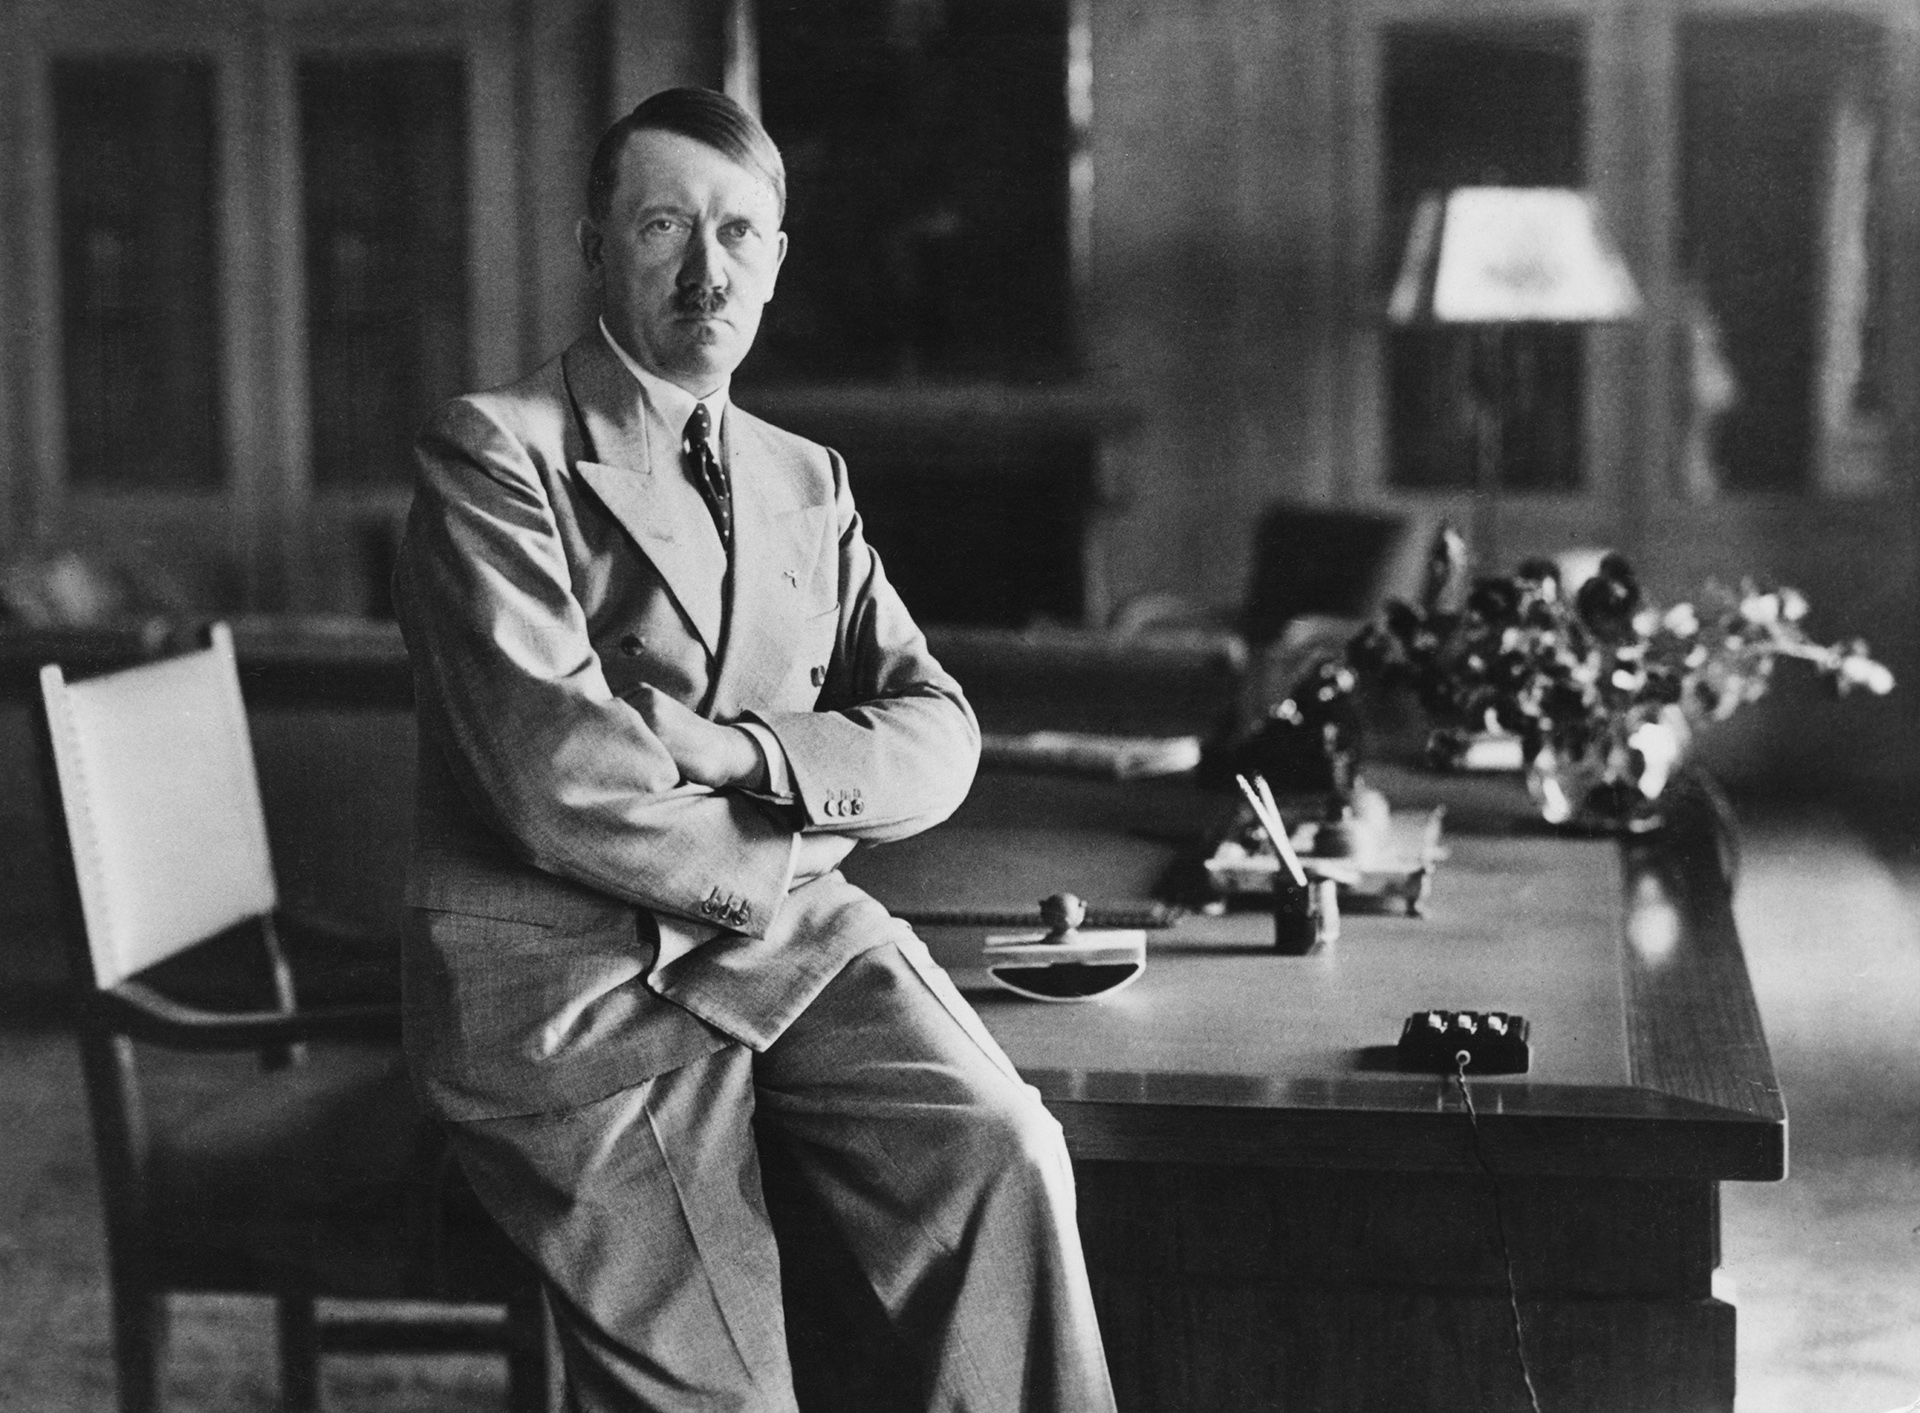 “Ahora soy completamente libre, interna y externamente. Ahora pertenezco solo al pueblo alemán y a mi misión”, dijo Hitler después de la misteriosa muerte de Geli (Popper/Popperfoto/Getty Images)